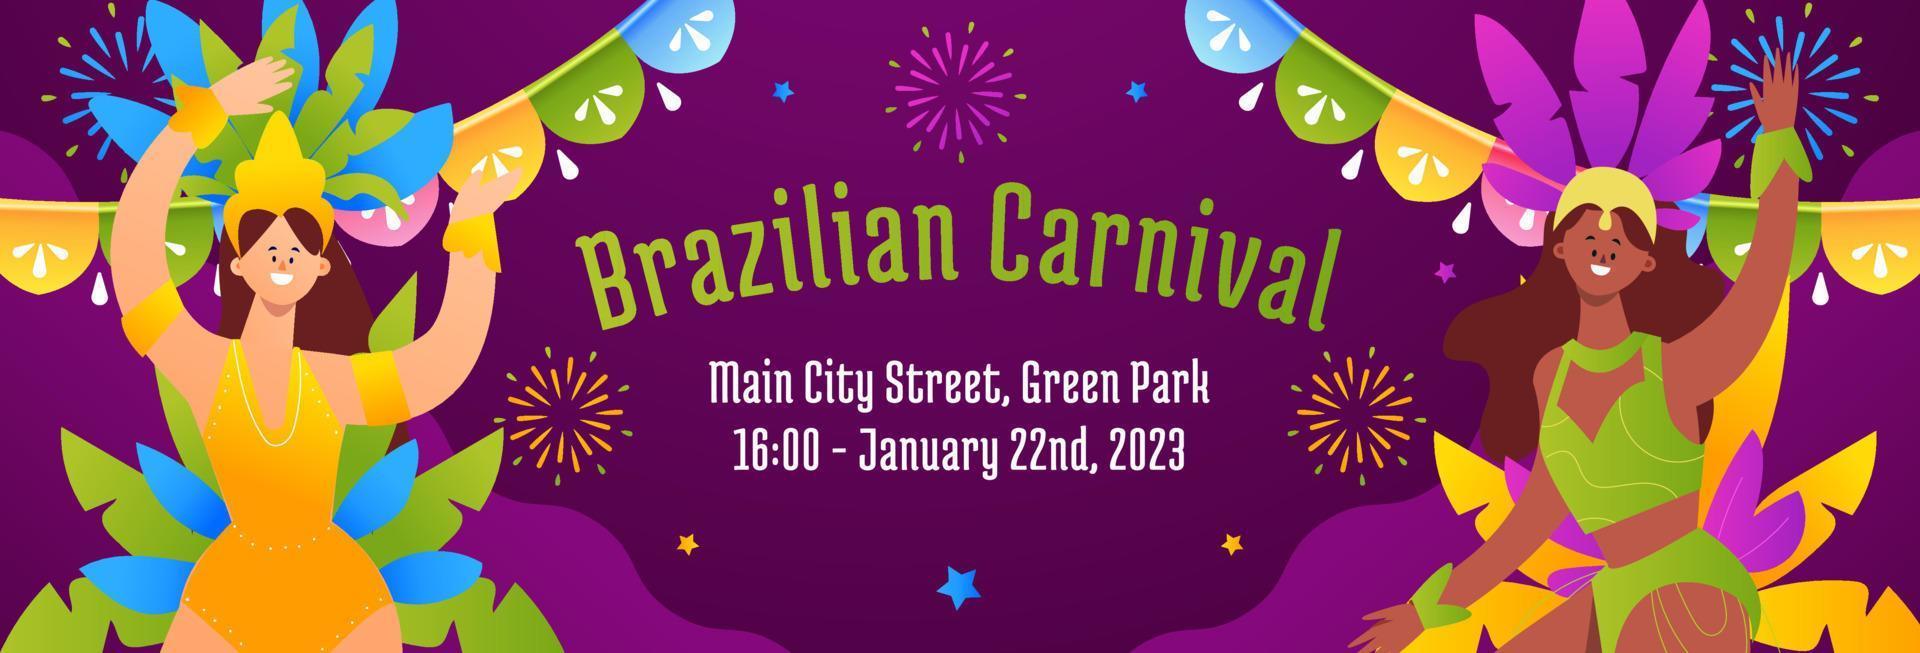 design plano de vetor de banner horizontal de carnaval brasileiro